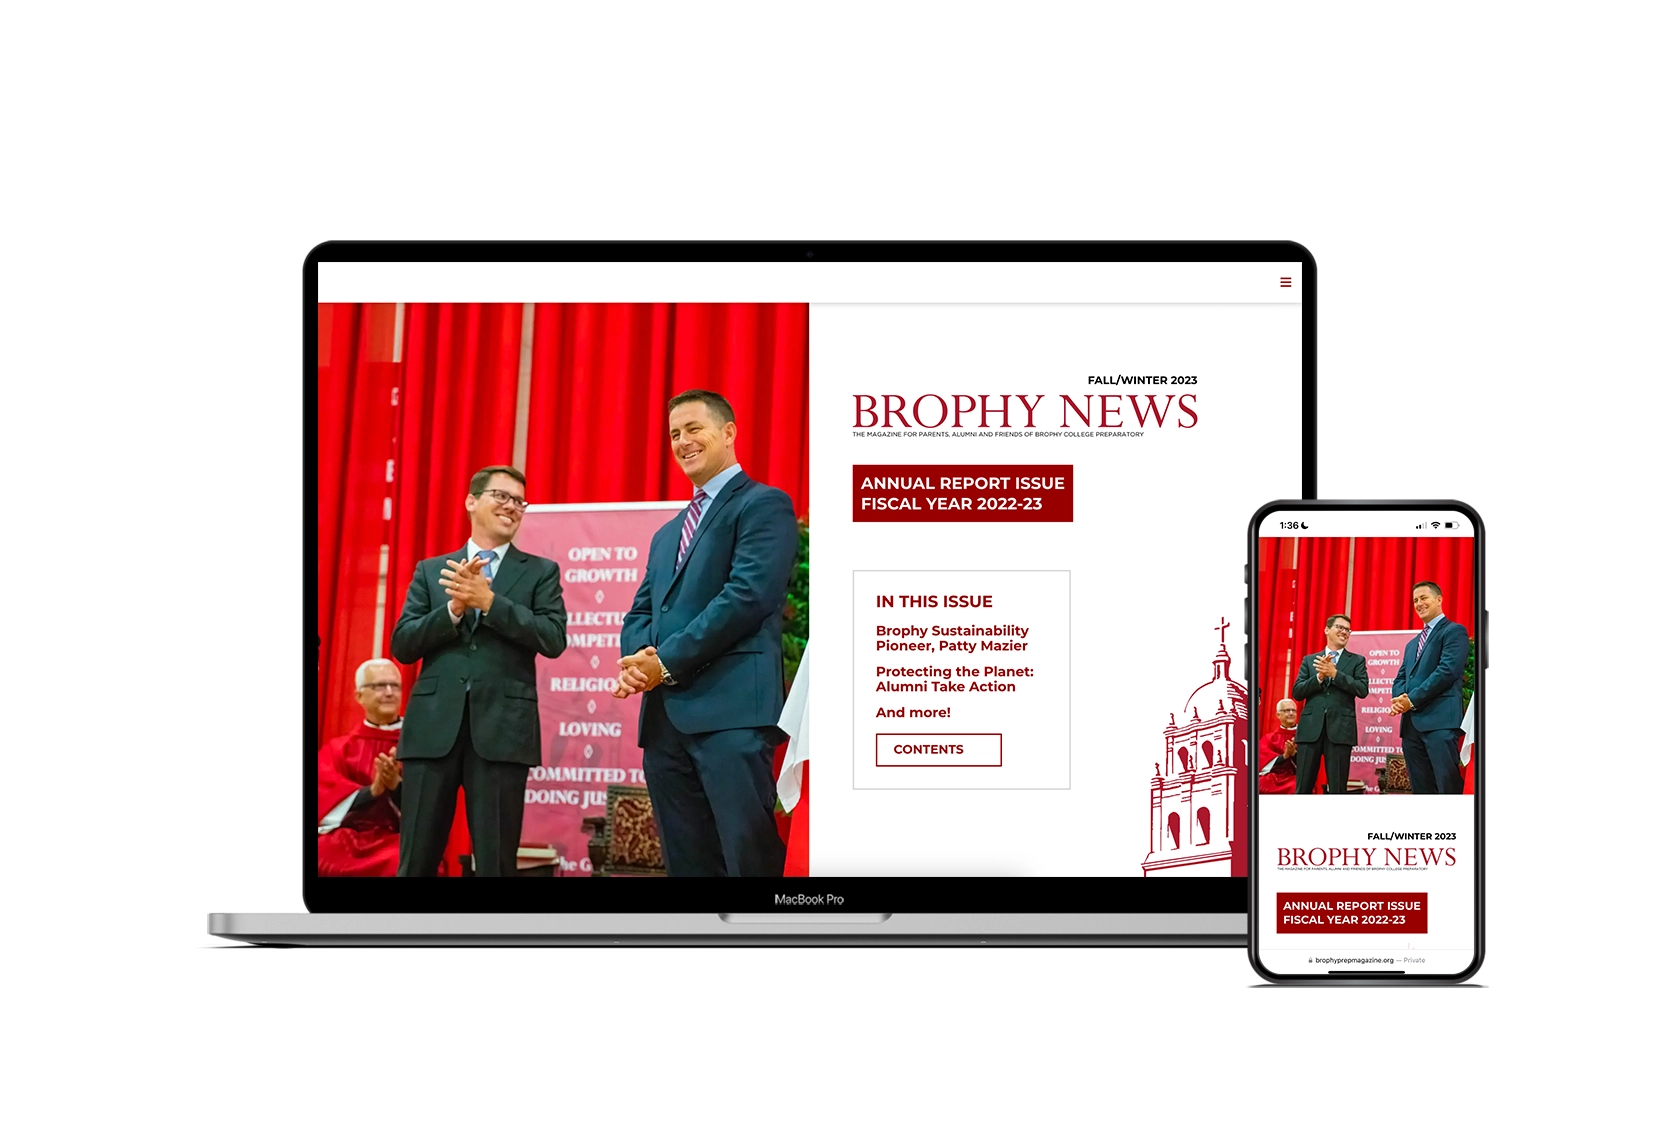 brophy news website